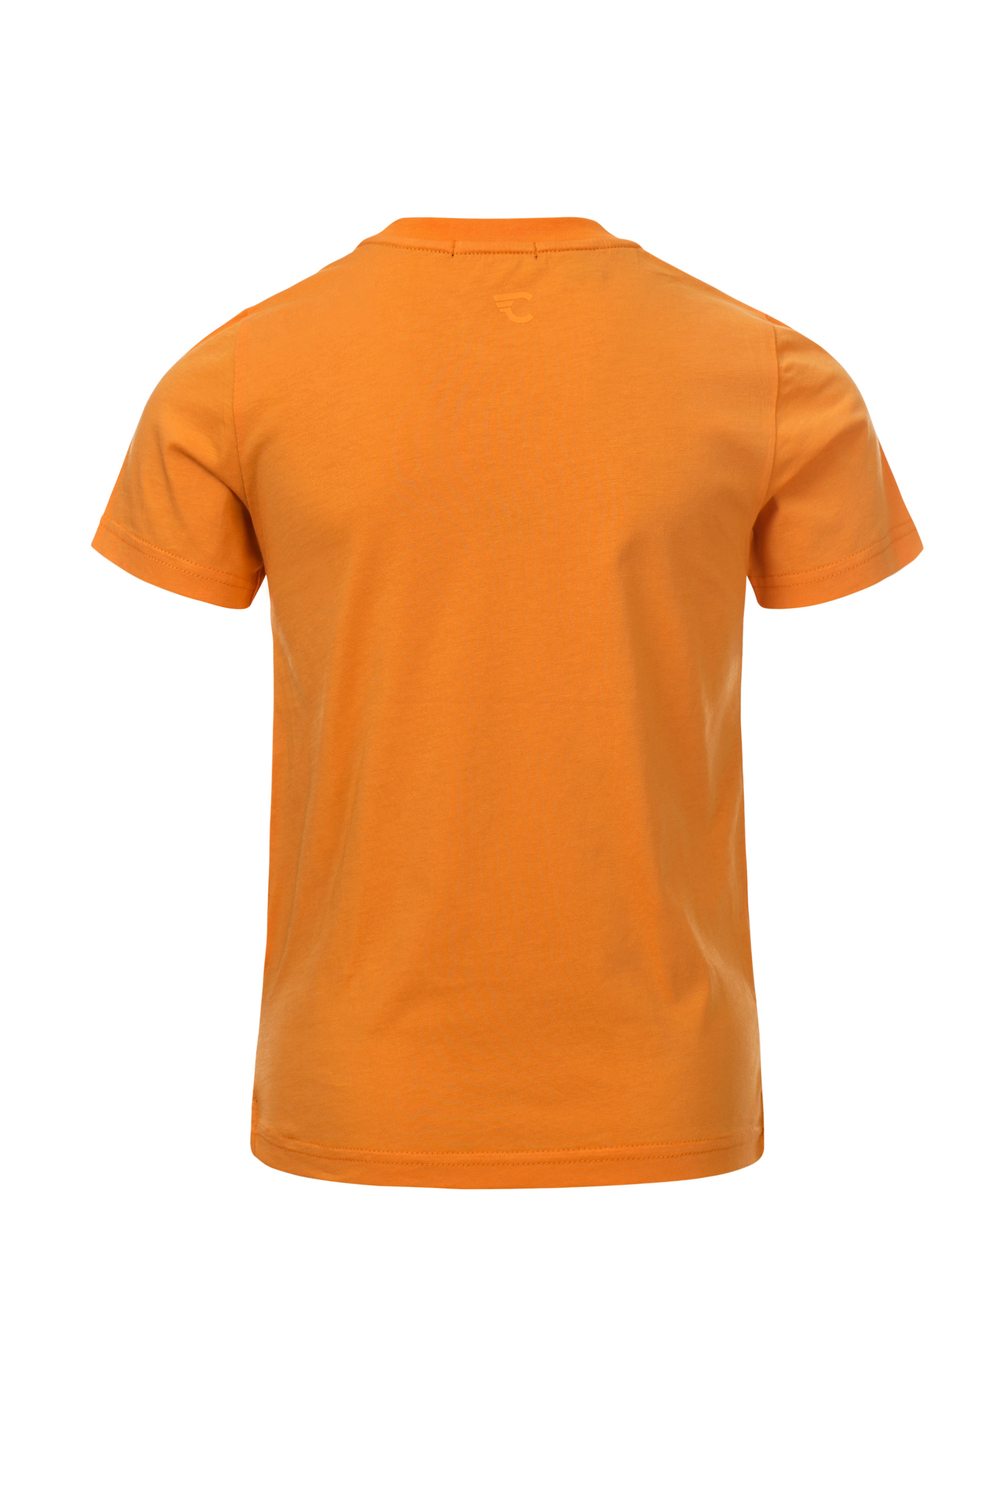 Jongens TIM yellow T-shirt van Common Heroes in de kleur Mellow in maat 146, 152.